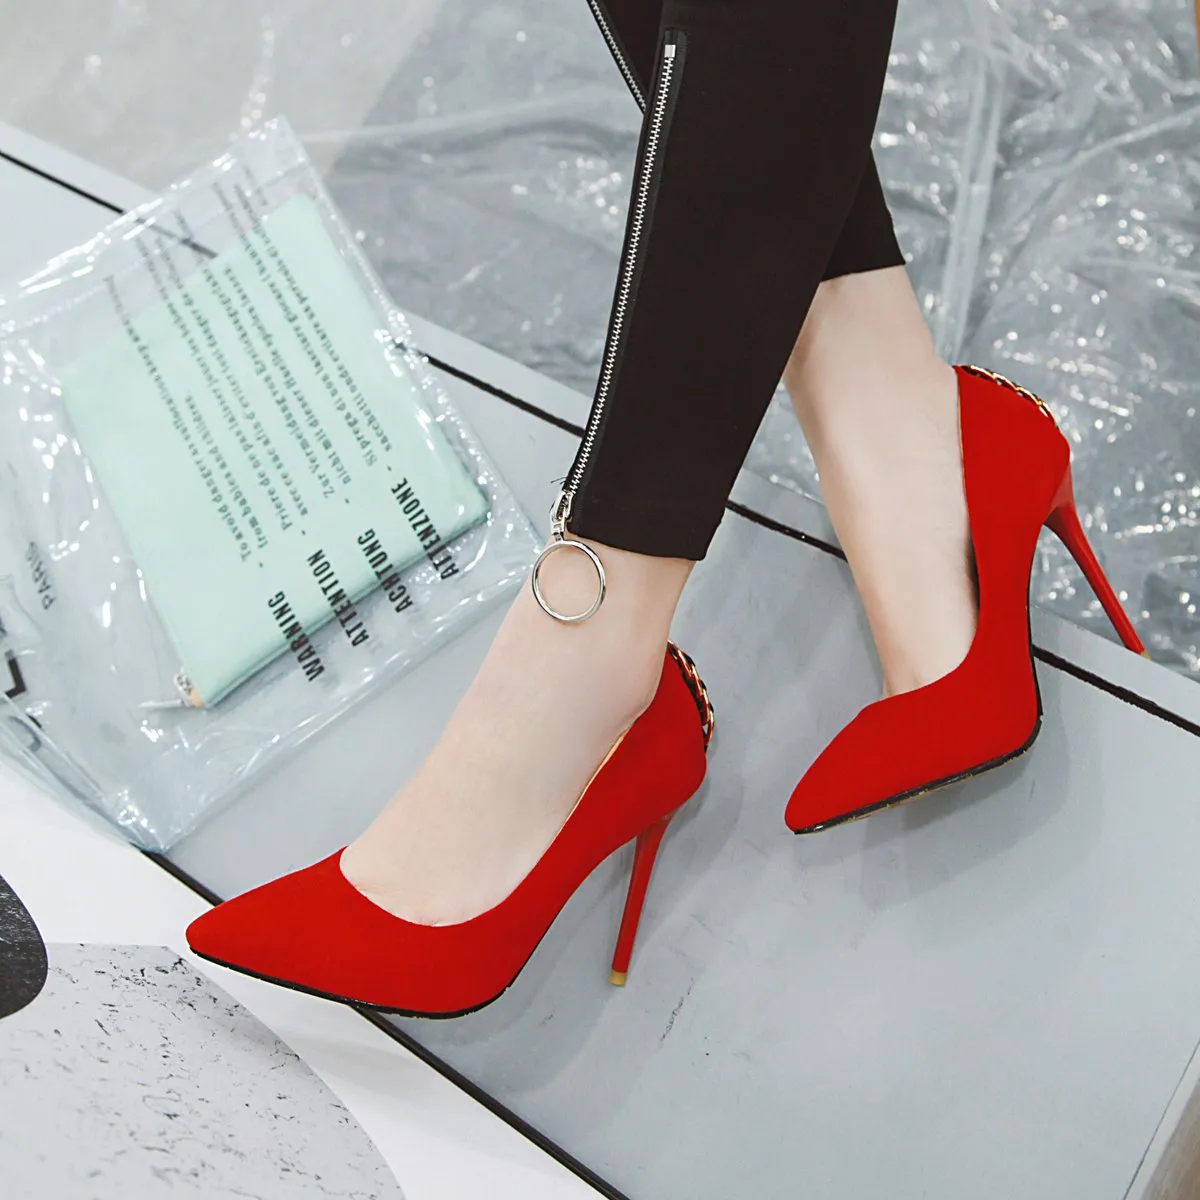 Toptan Yeni Seksi Stiletto Topuk Süet Arka Yüzük Saç Pompalı Kadın Pompalar 105mm Moda Yüksek Topuklu Ayakkabı Kadınlar İçin Ofis Elbise Ayakkabıları